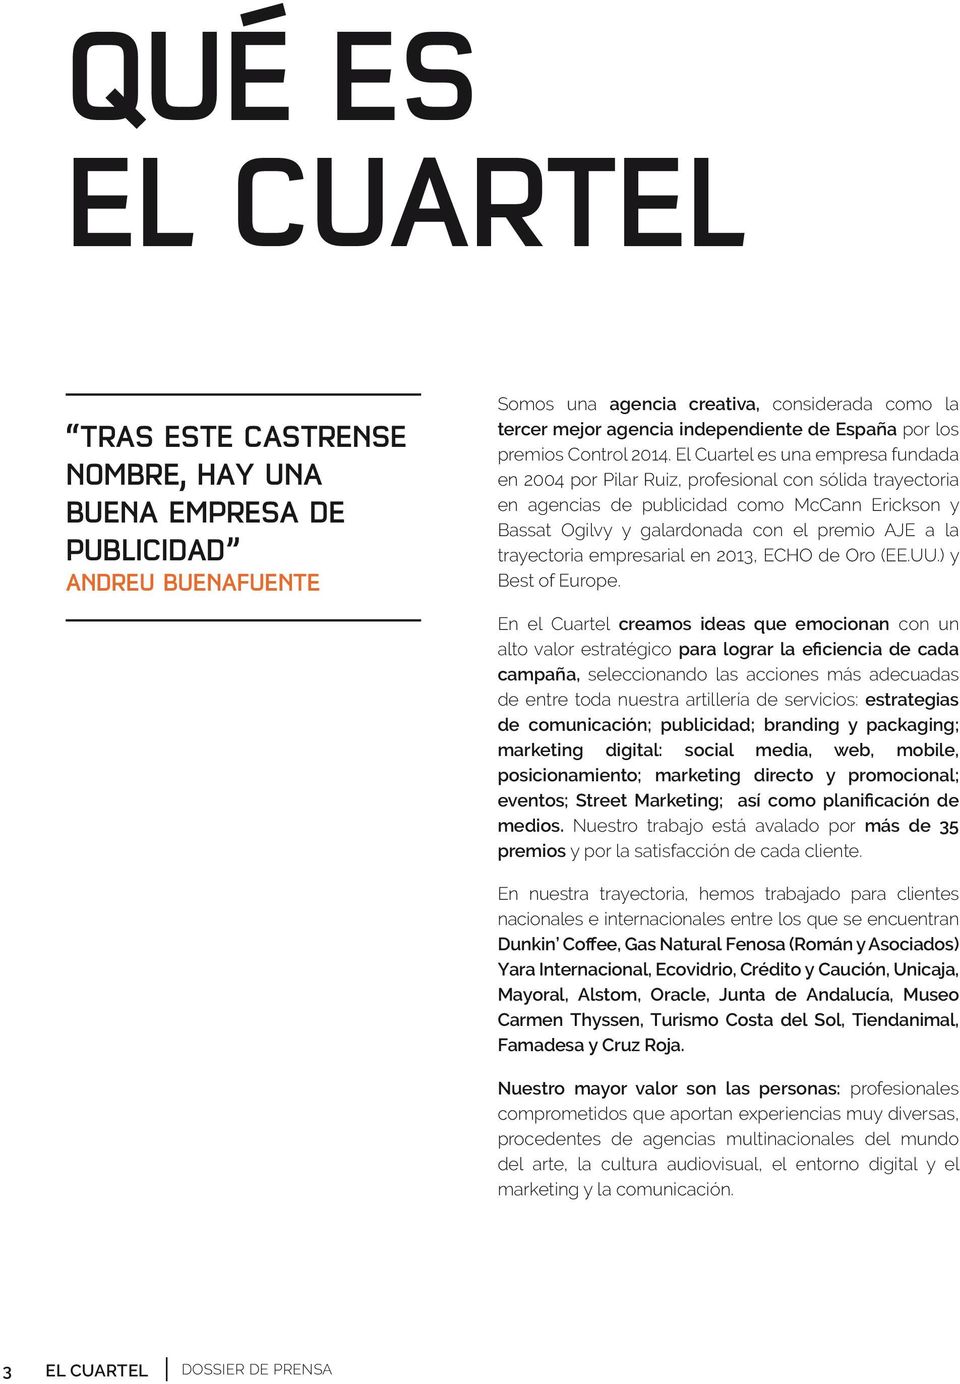 El Cuartel es una empresa fundada en 2004 por Pilar Ruiz, profesional con sólida trayectoria en agencias de publicidad como McCann Erickson y Bassat Ogilvy y galardonada con el premio AJE a la